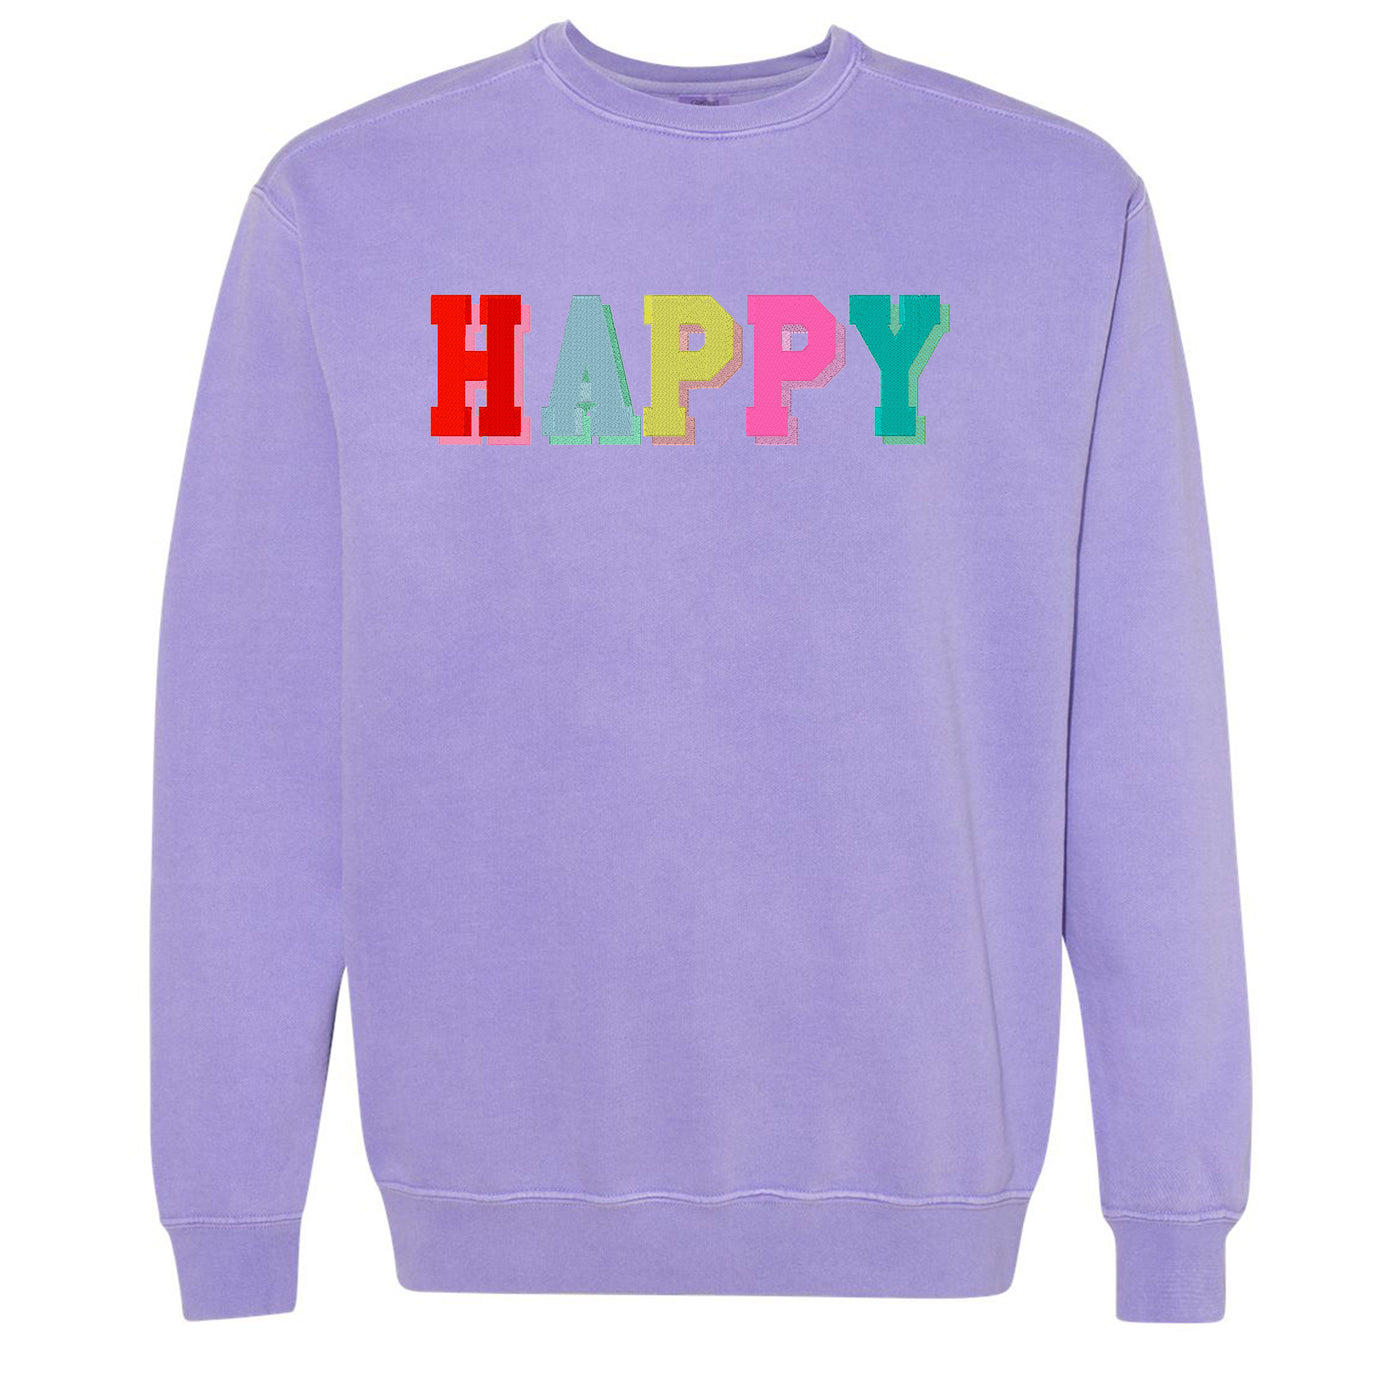 'Happy' Comfort Colors Sweatshirt